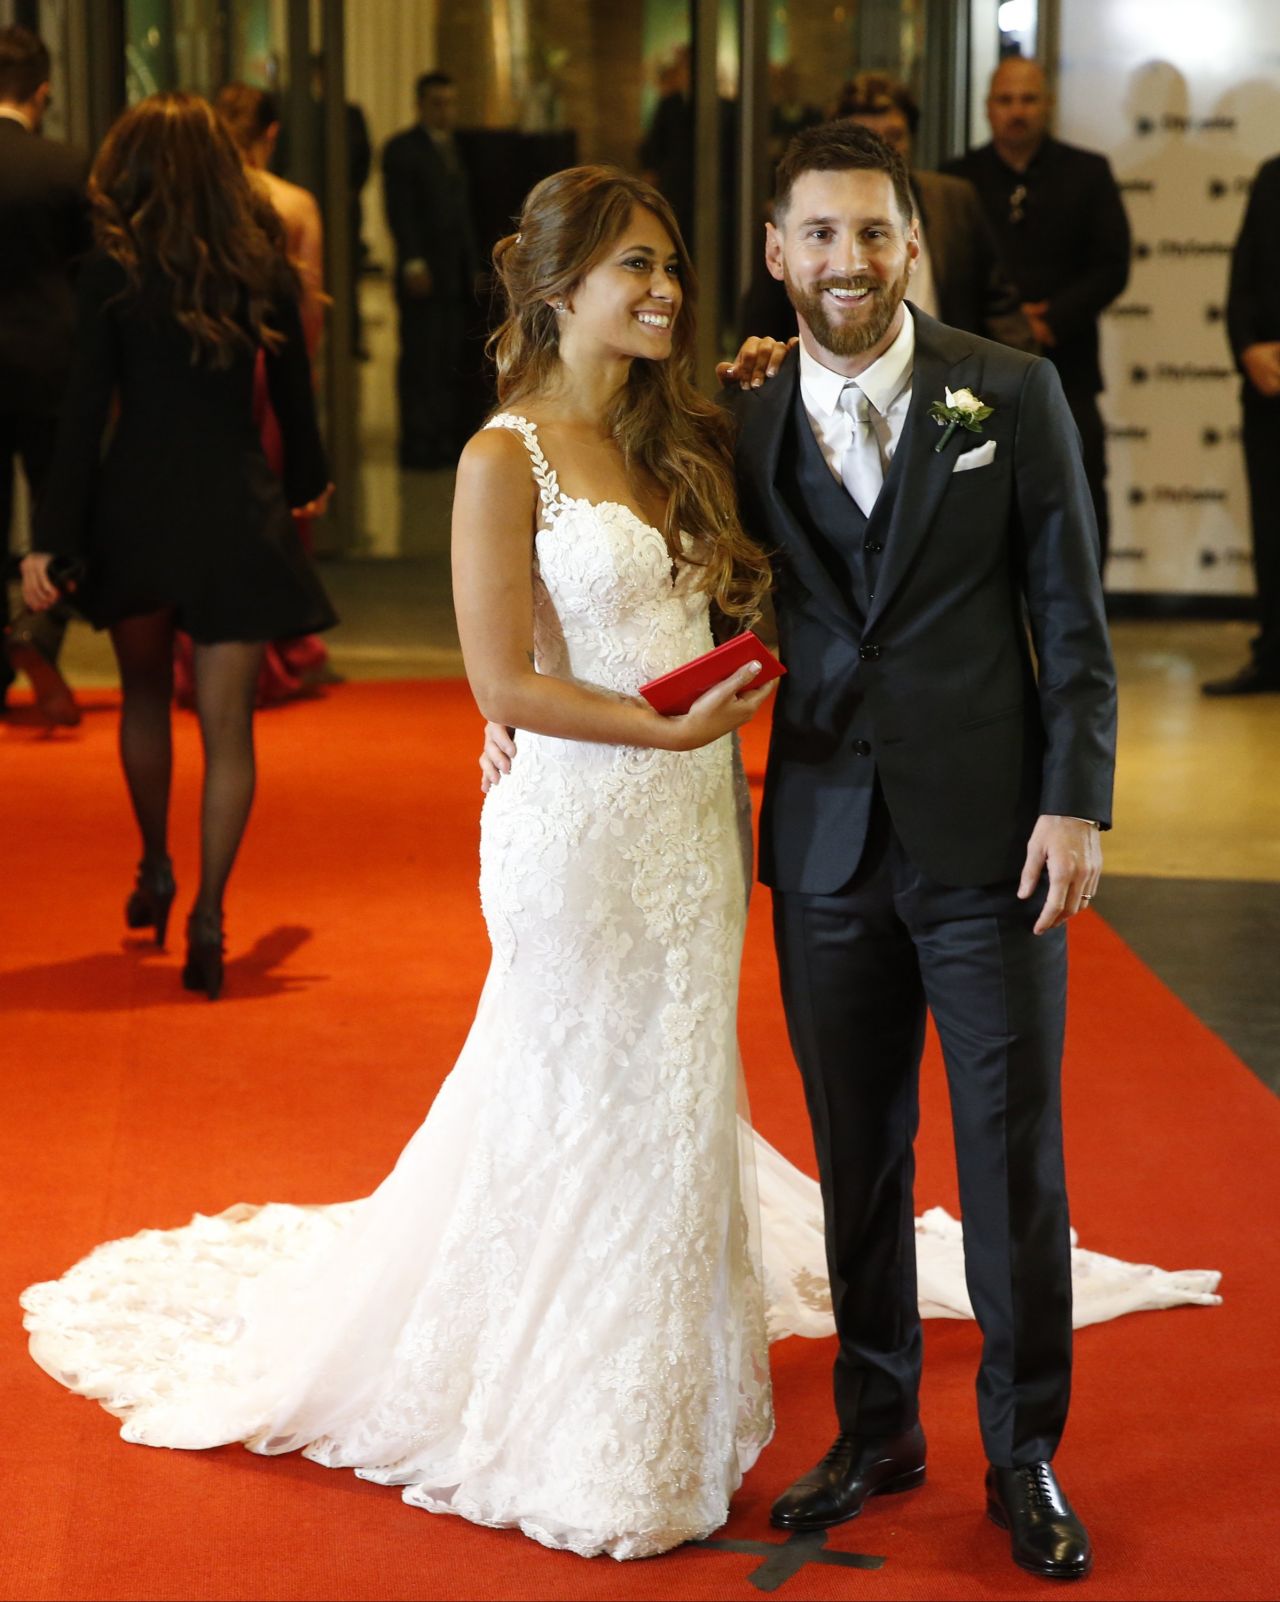 Lionel Messi And Wife Antonella Roccuzzo Wedding Reception In Argentina 06 30 2017 Celebmafia